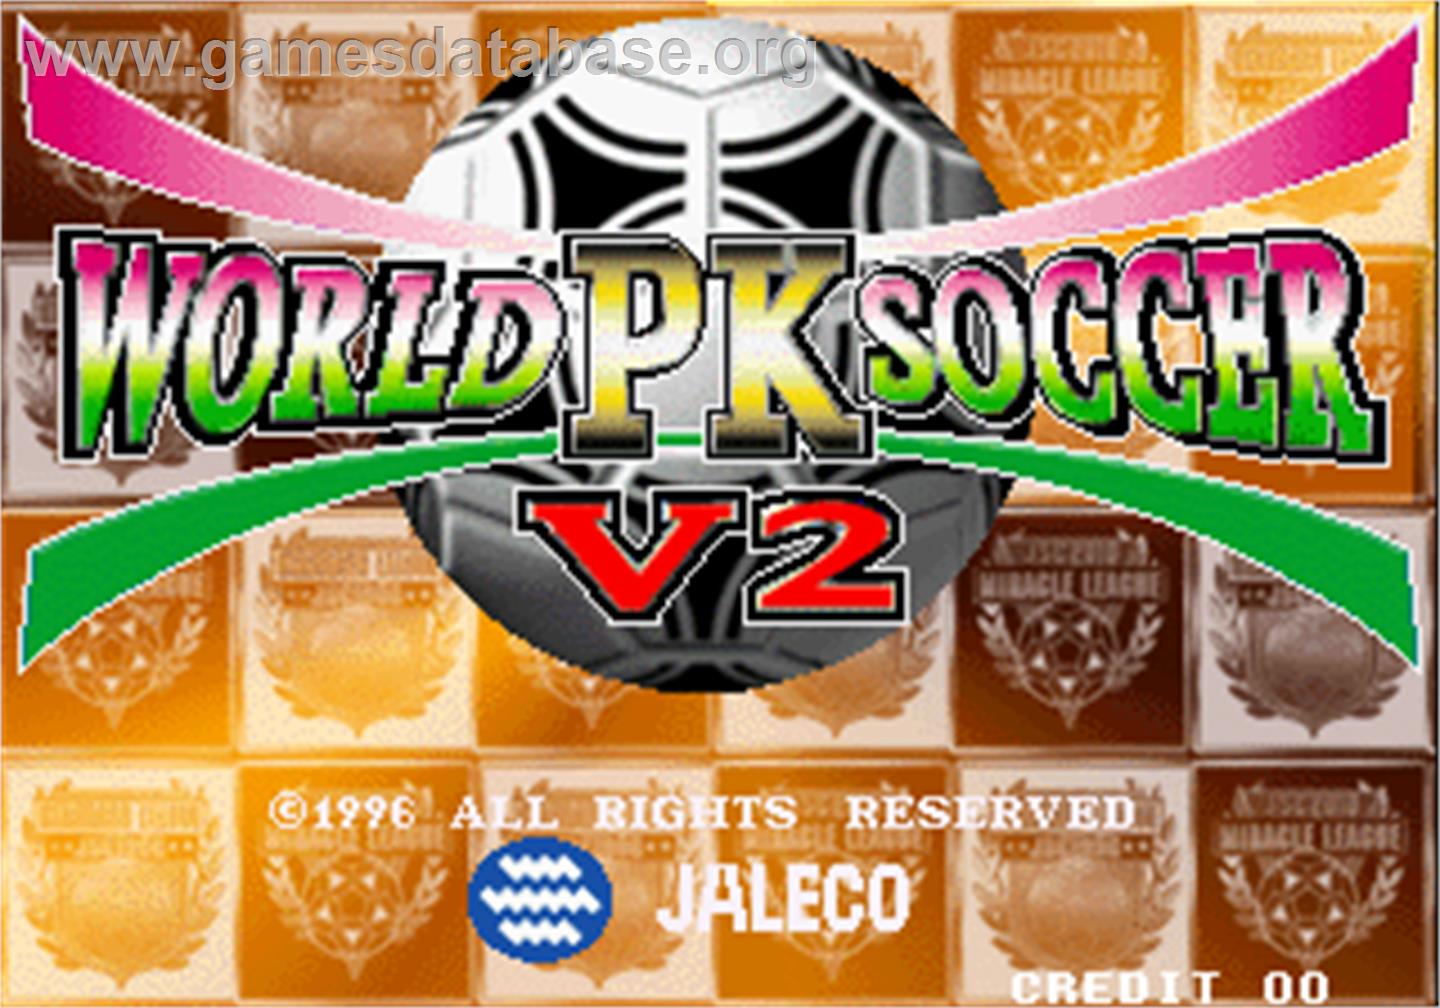 World PK Soccer V2 - Arcade - Artwork - Title Screen